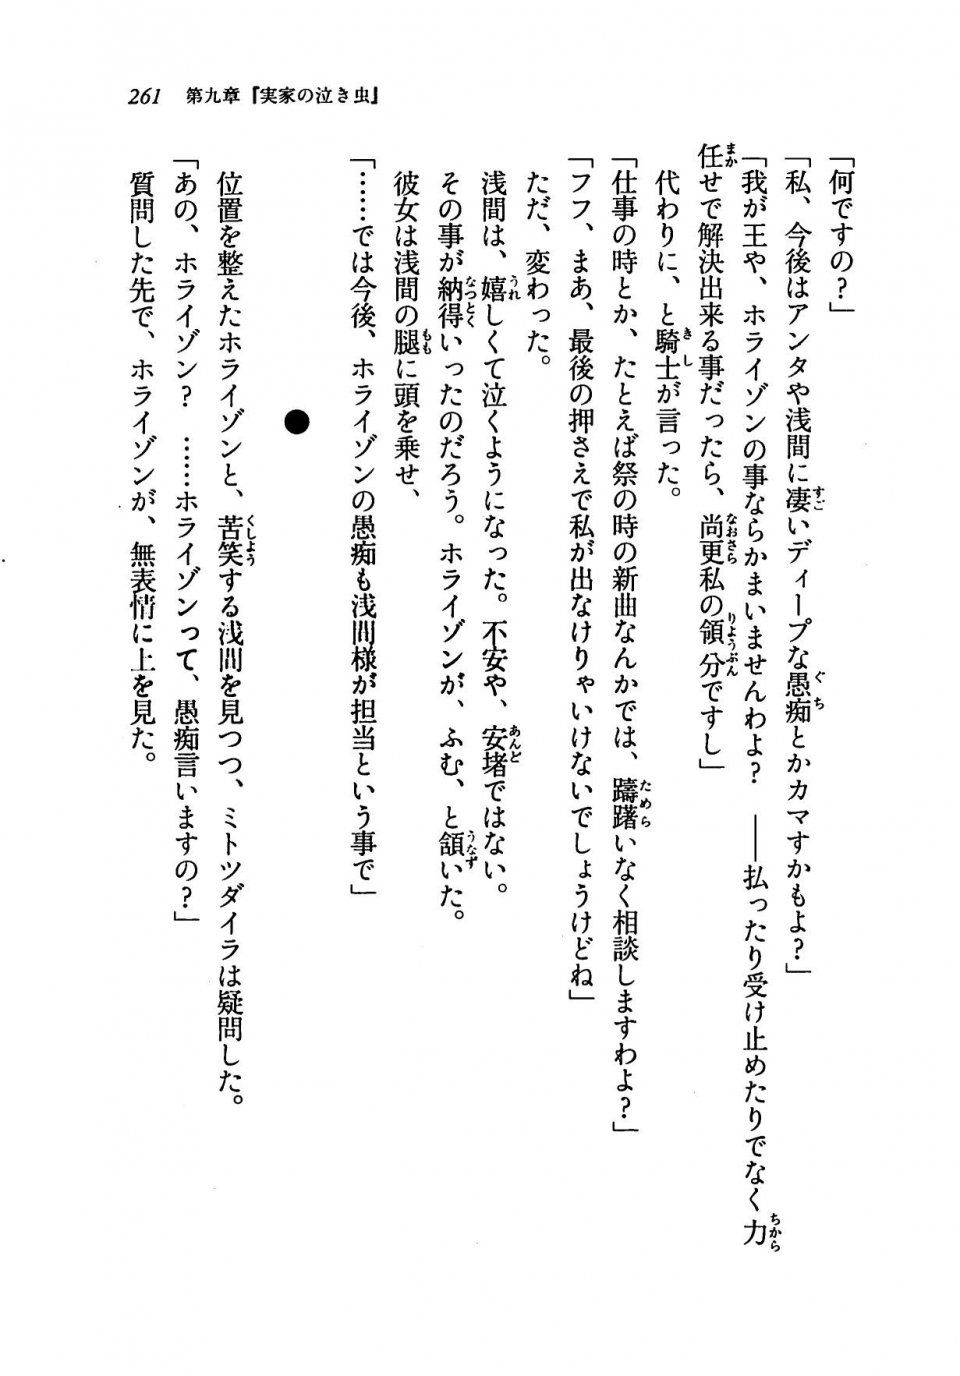 Kyoukai Senjou no Horizon LN Vol 19(8A) - Photo #261